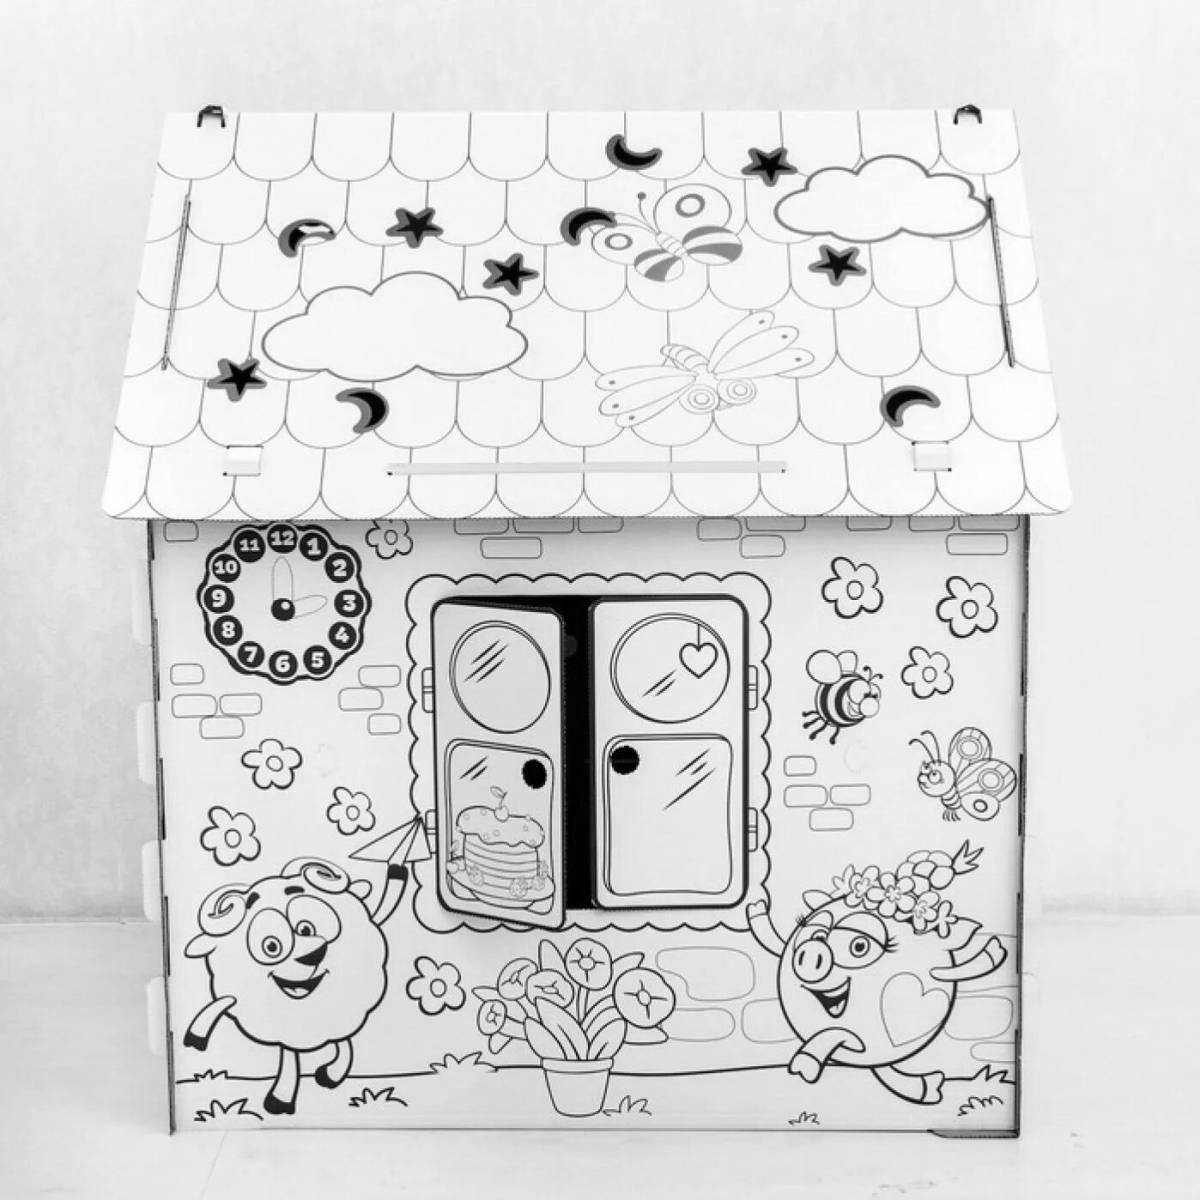 Увлекательная раскраска картонного домика для детей